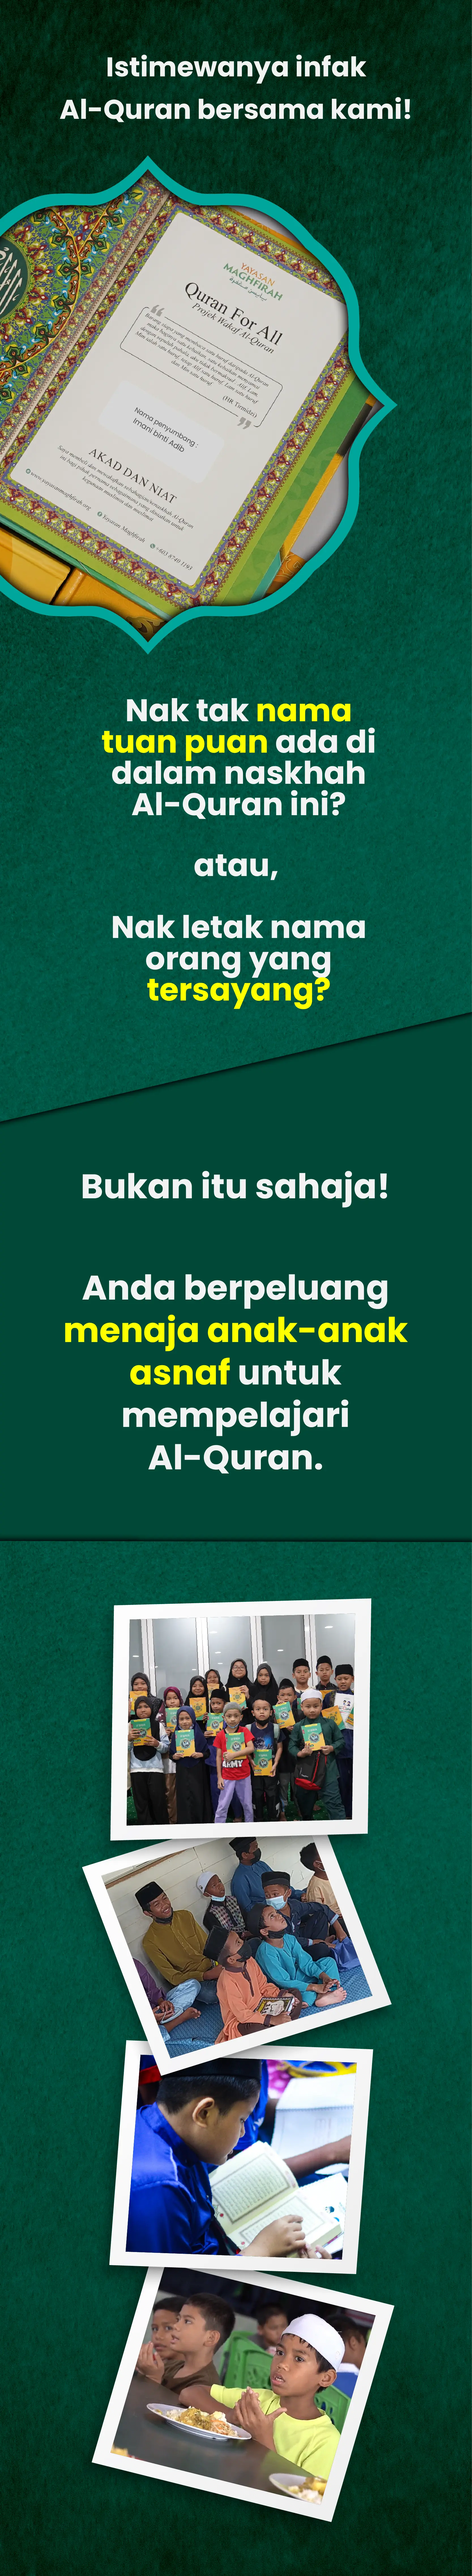 Infak Al-Quran LP 04